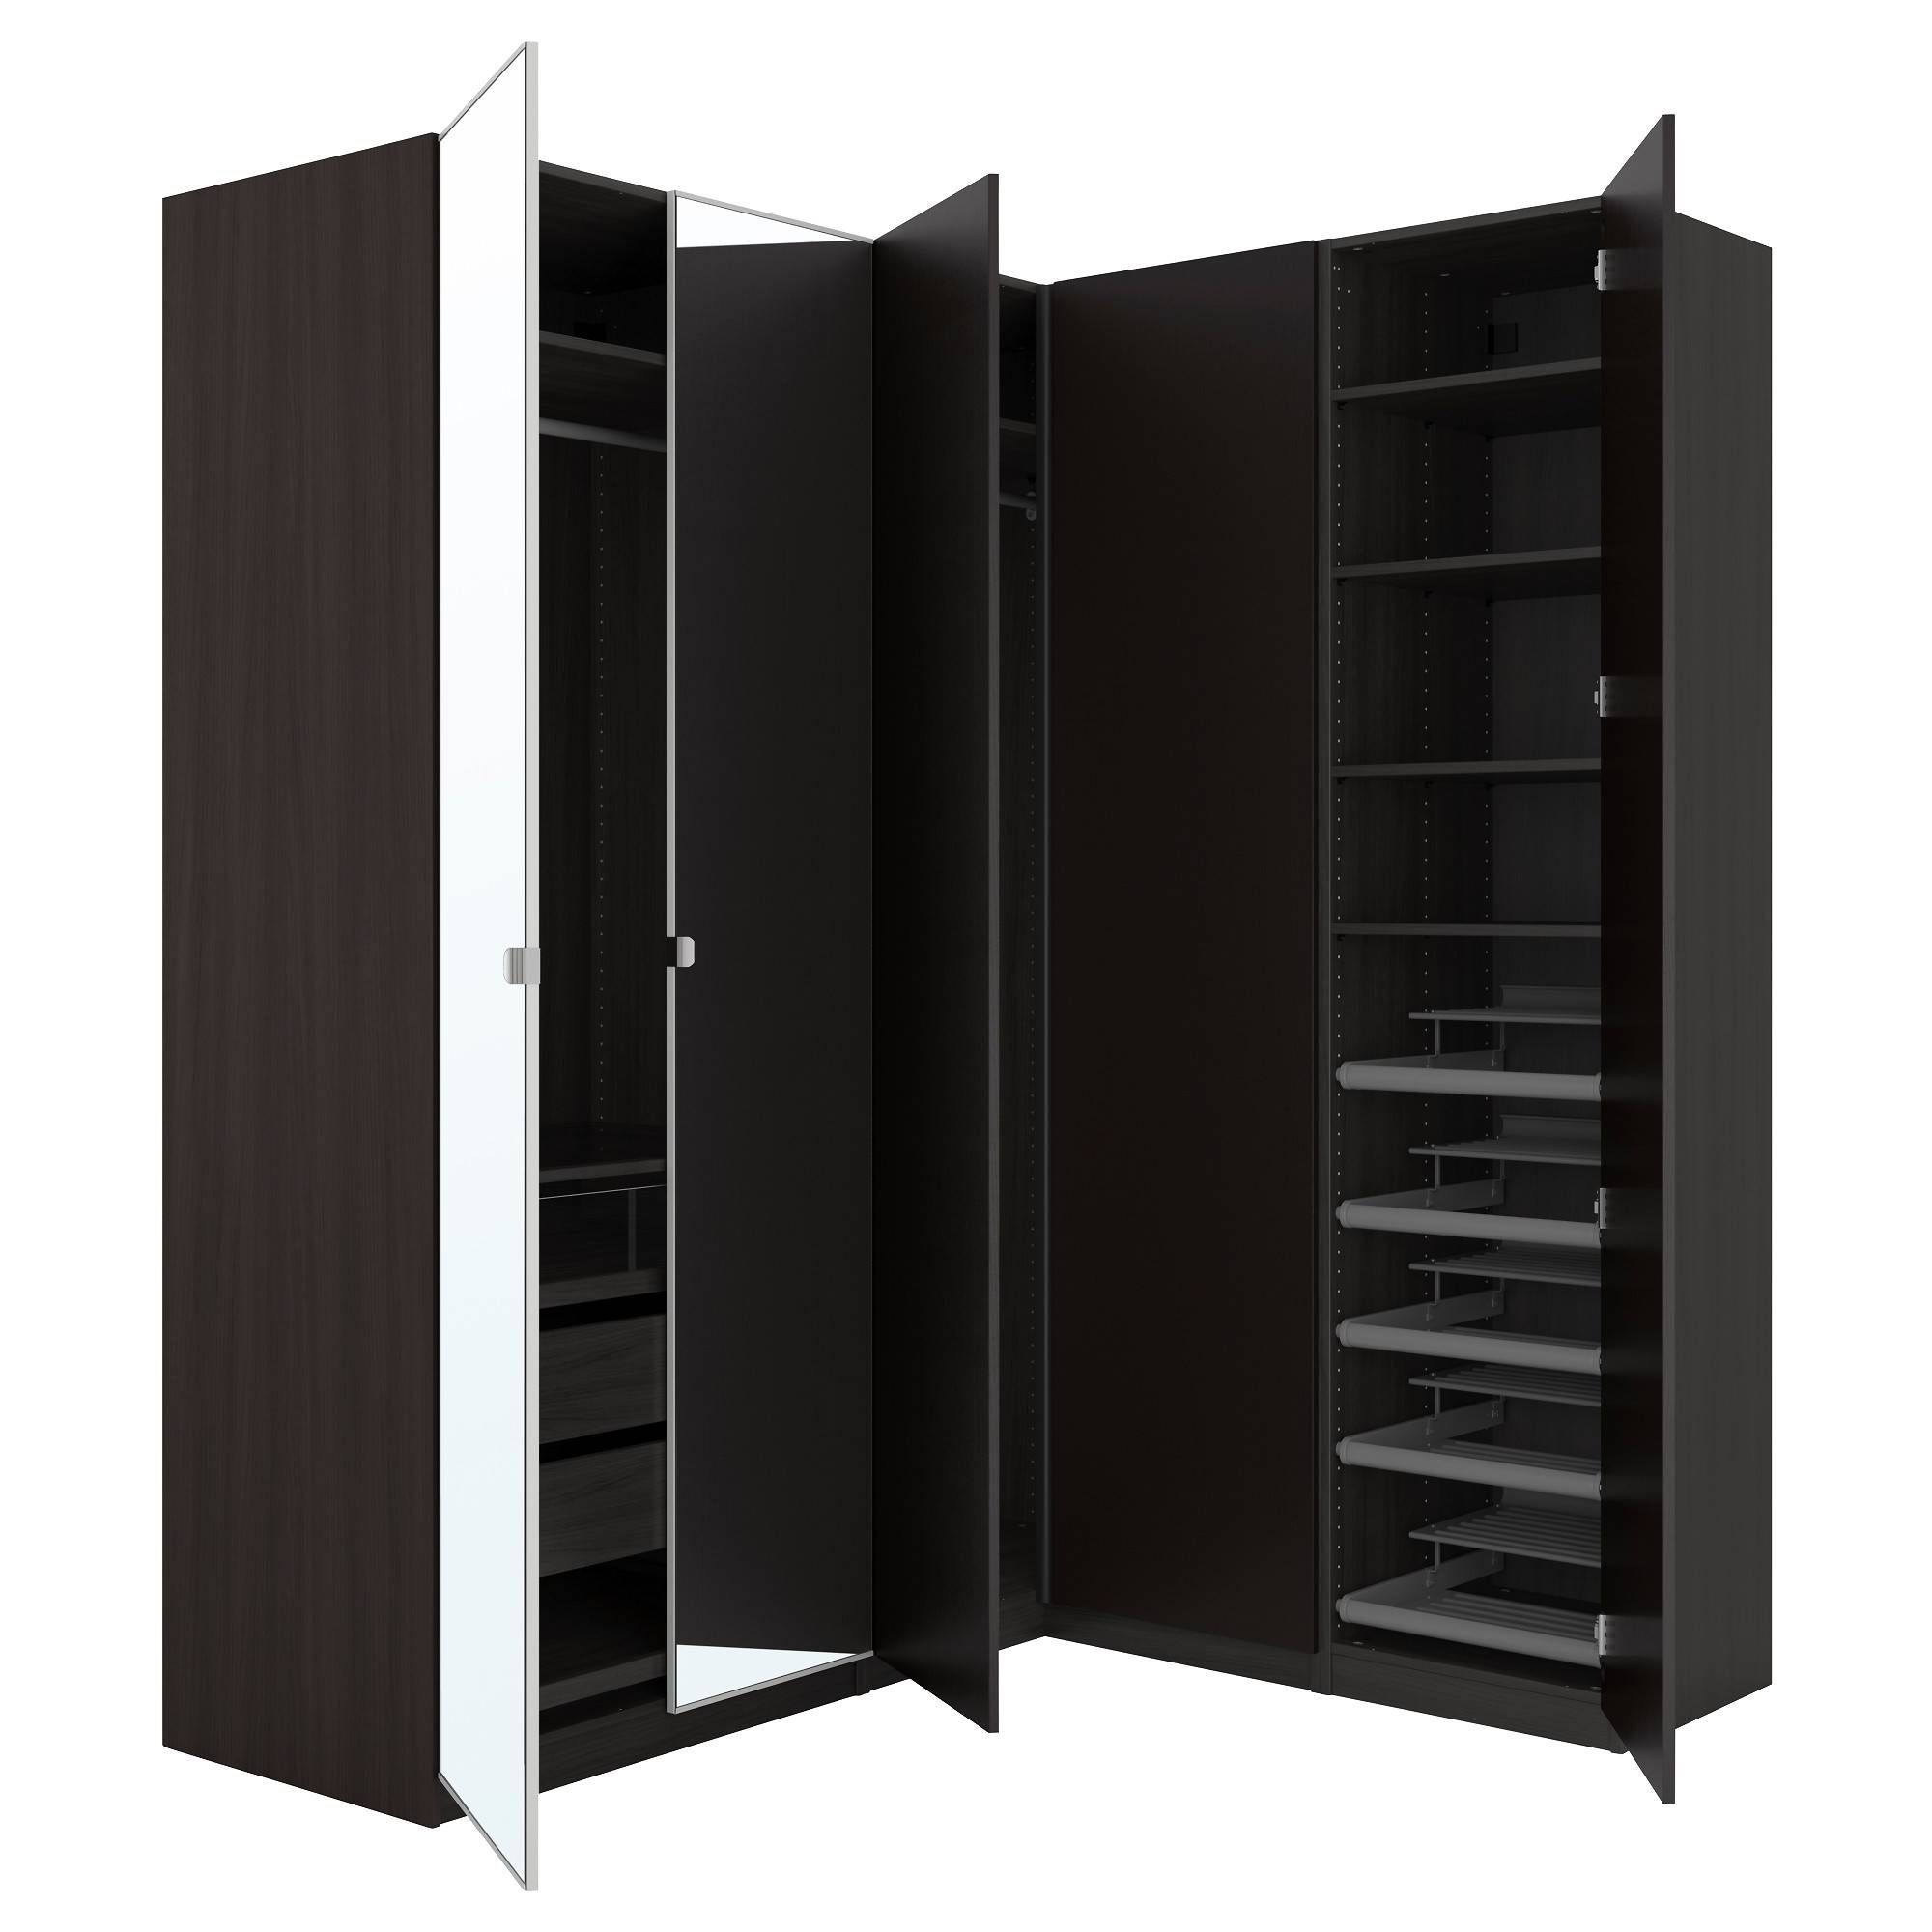 Pax Corner Wardrobe Black Brown/nexus Vikedal 210/160x236 Cm – Ikea Inside Black Corner Wardrobes (View 4 of 15)